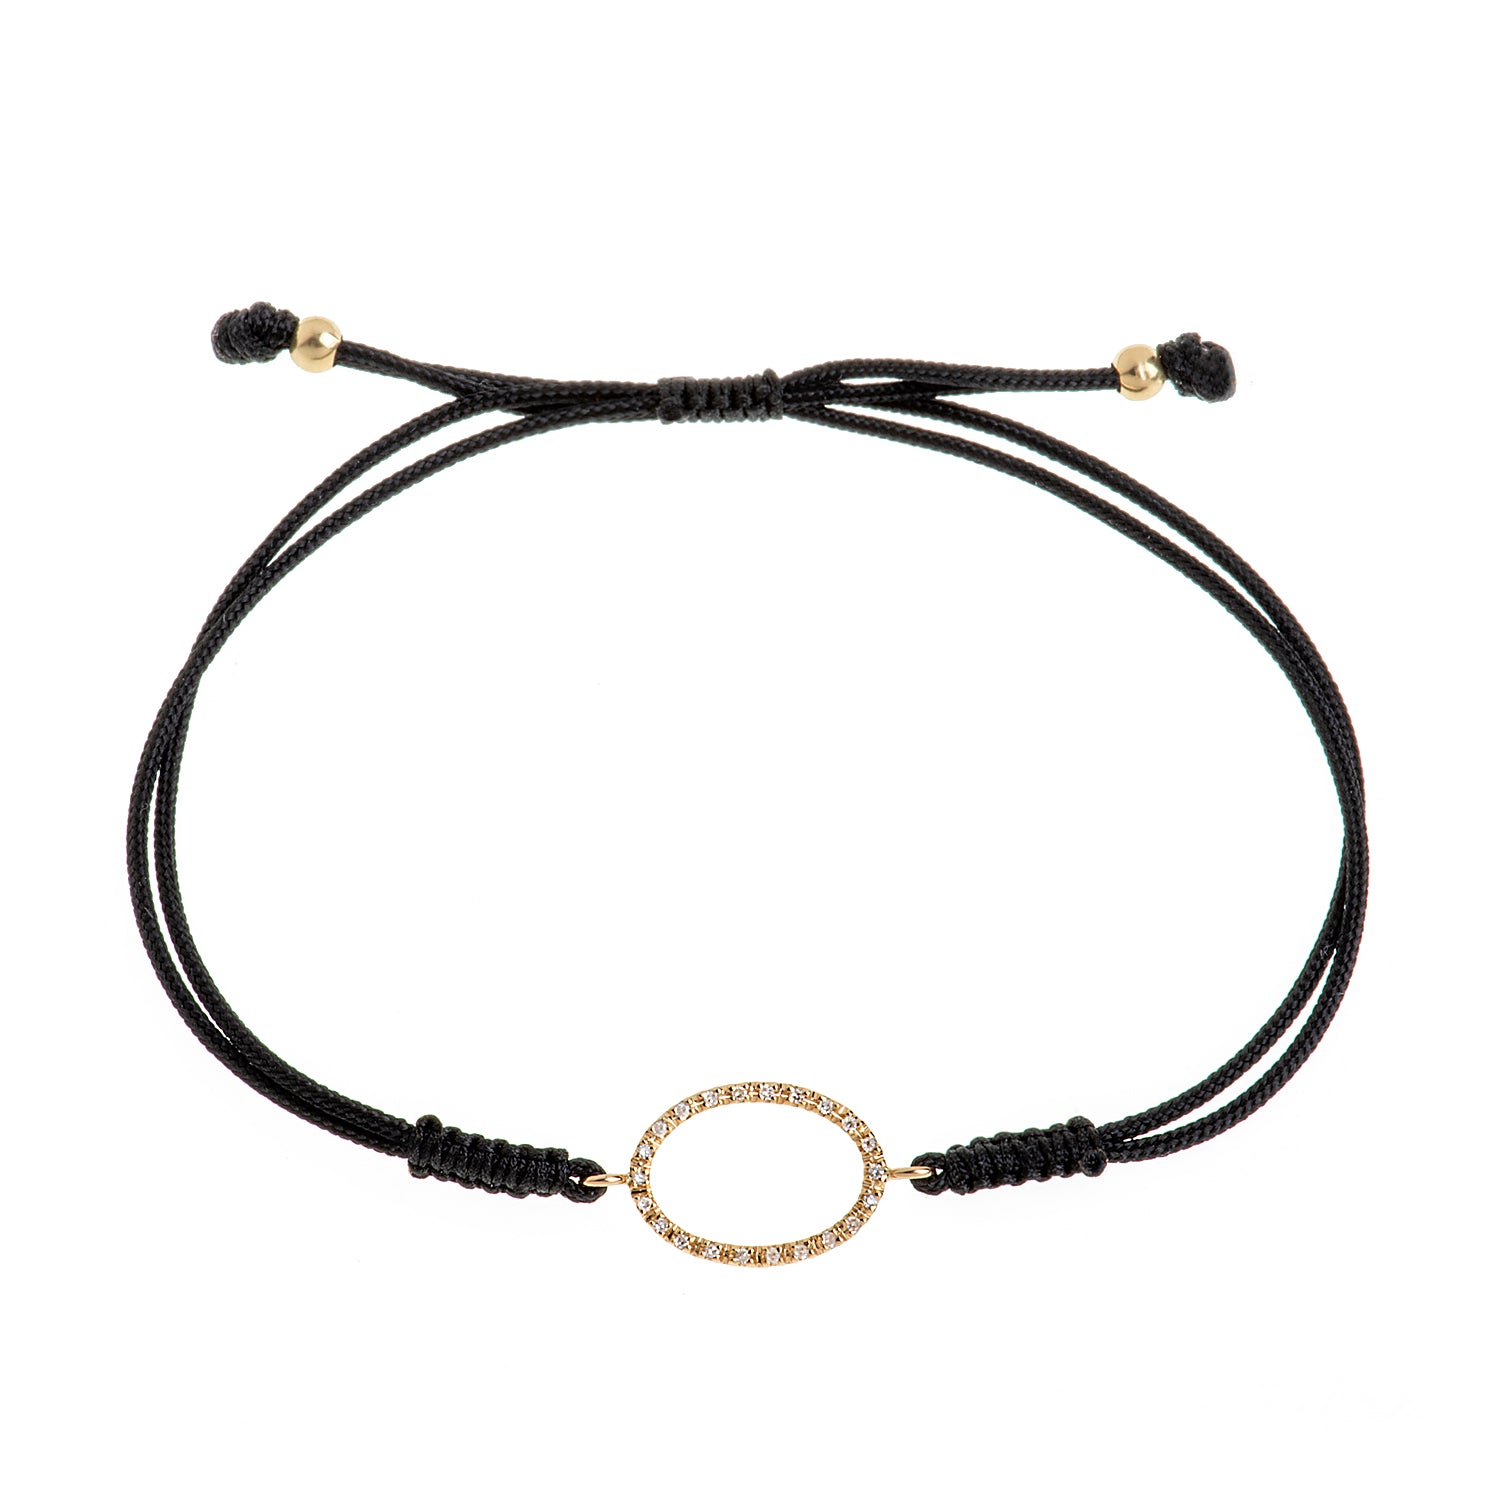 Oval Cord Bracelet